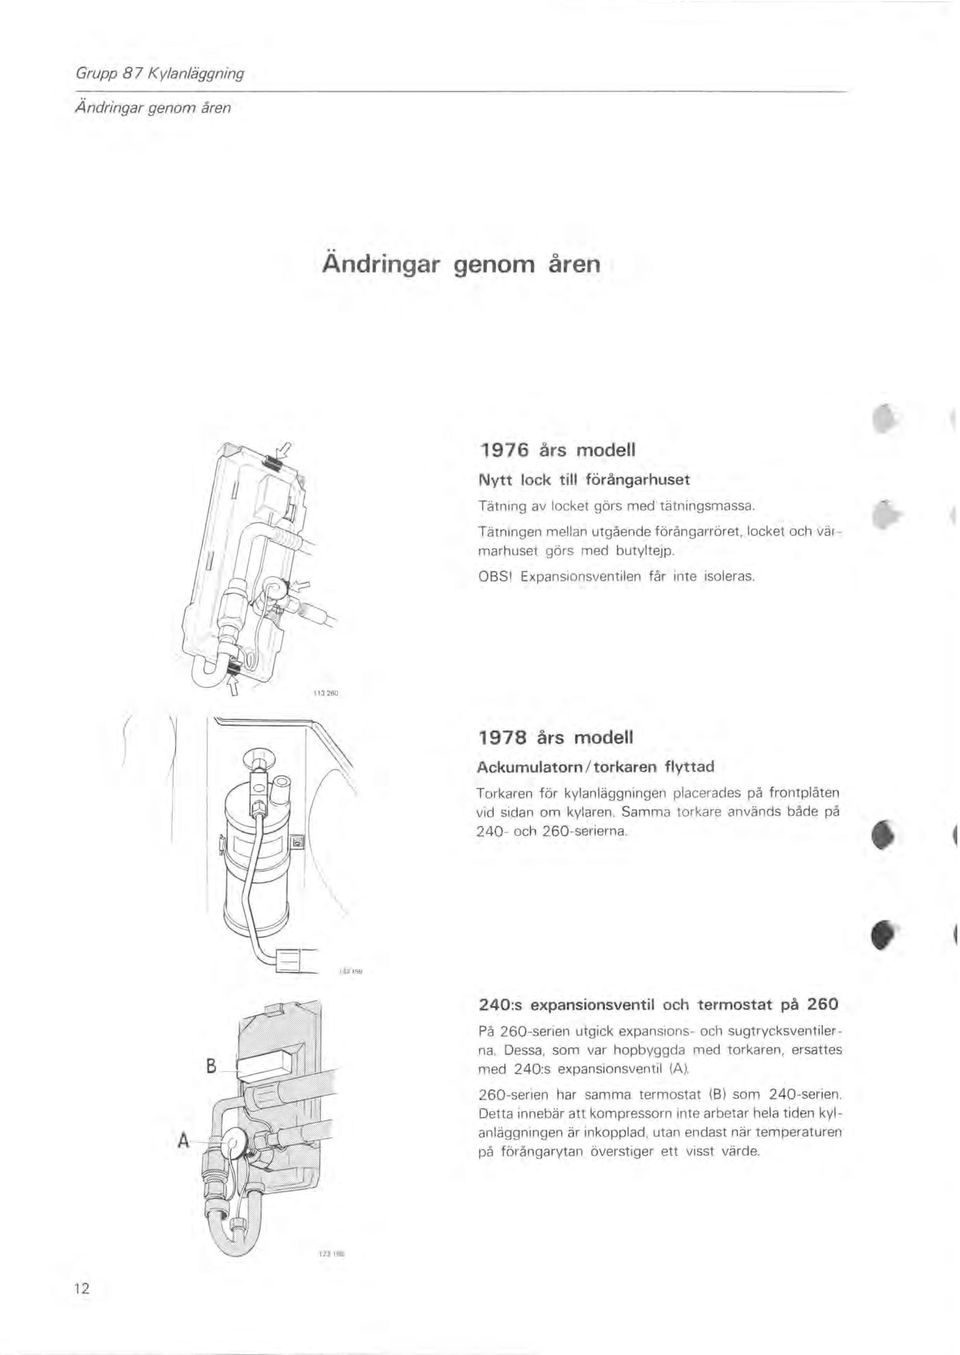 ) 1978 års modell Ackumulatorn / torkaren flyttad Torkaren för kylanläggningen placerades på frontplåten vid sidan om kylaren. Samma torkare används både på 240- och 260-serierna.